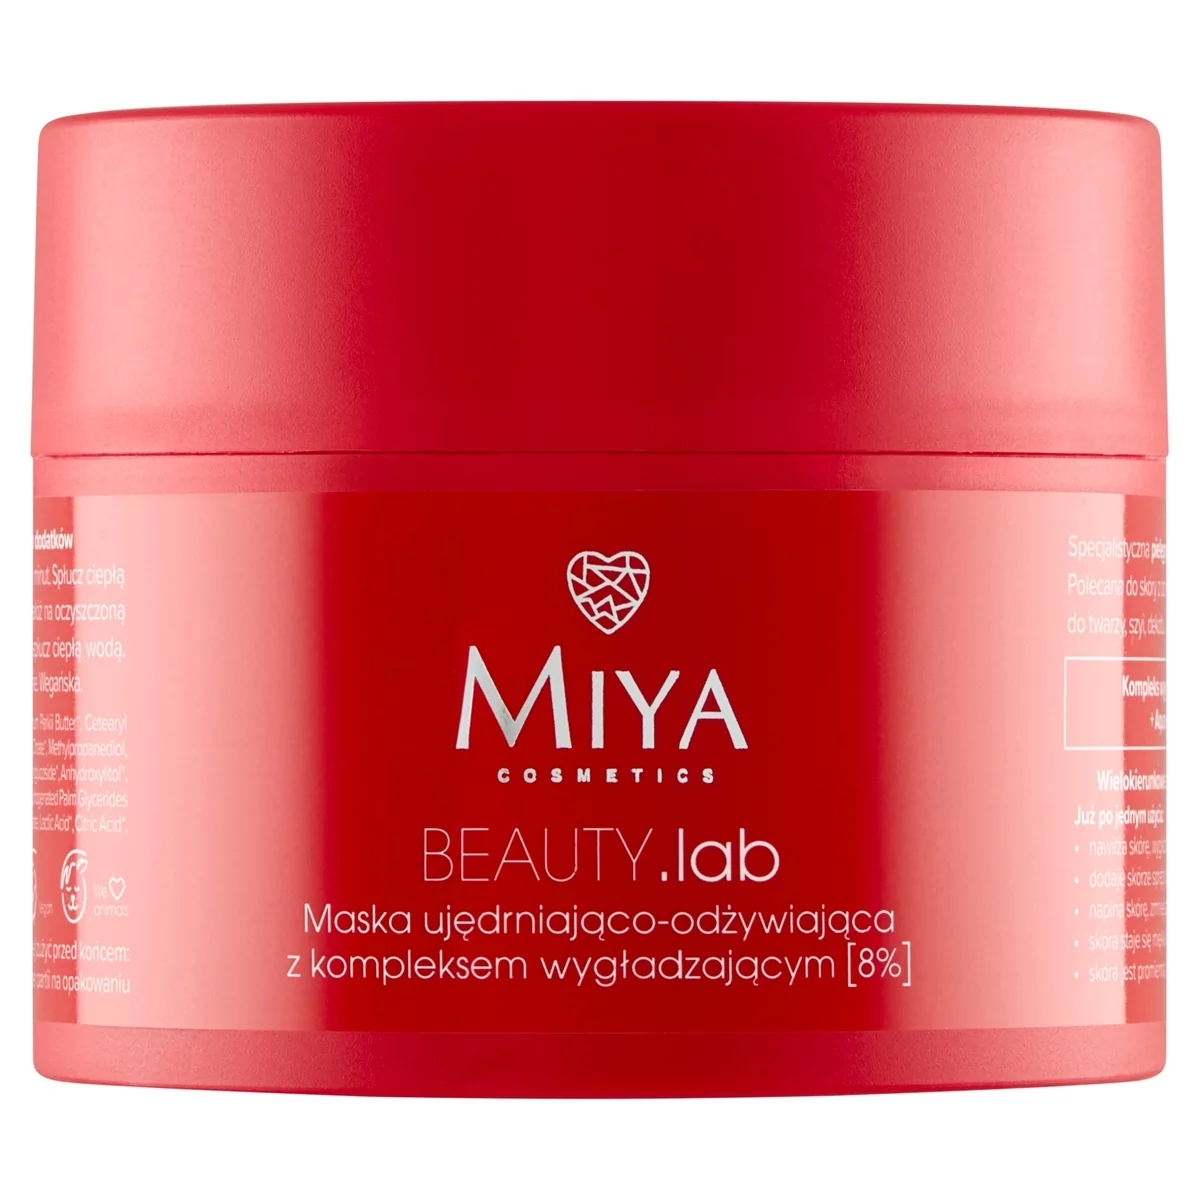 Miya Cosmetics Miya BEAUTY.lab - maska ujędrniająco-odżywiająca z kompleksem wygładzającym (8%) 50ml